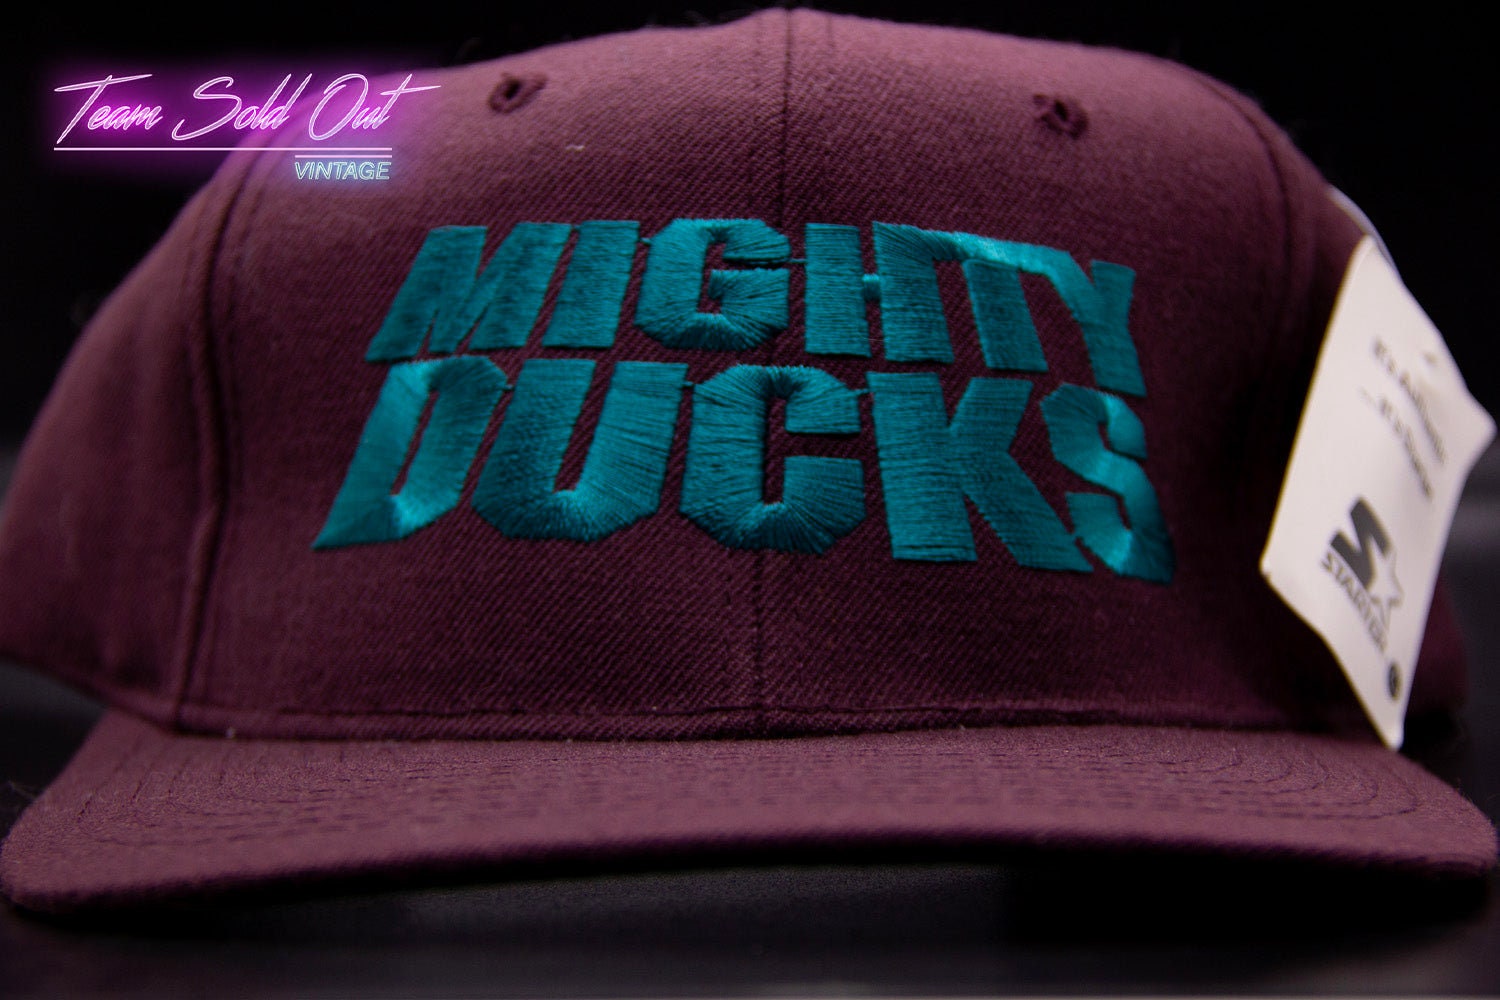 GCC Anaheim Mighty Ducks NHL 90's Vintage Adjustable Snapback Cap Hat - NWT  Purple/Teal